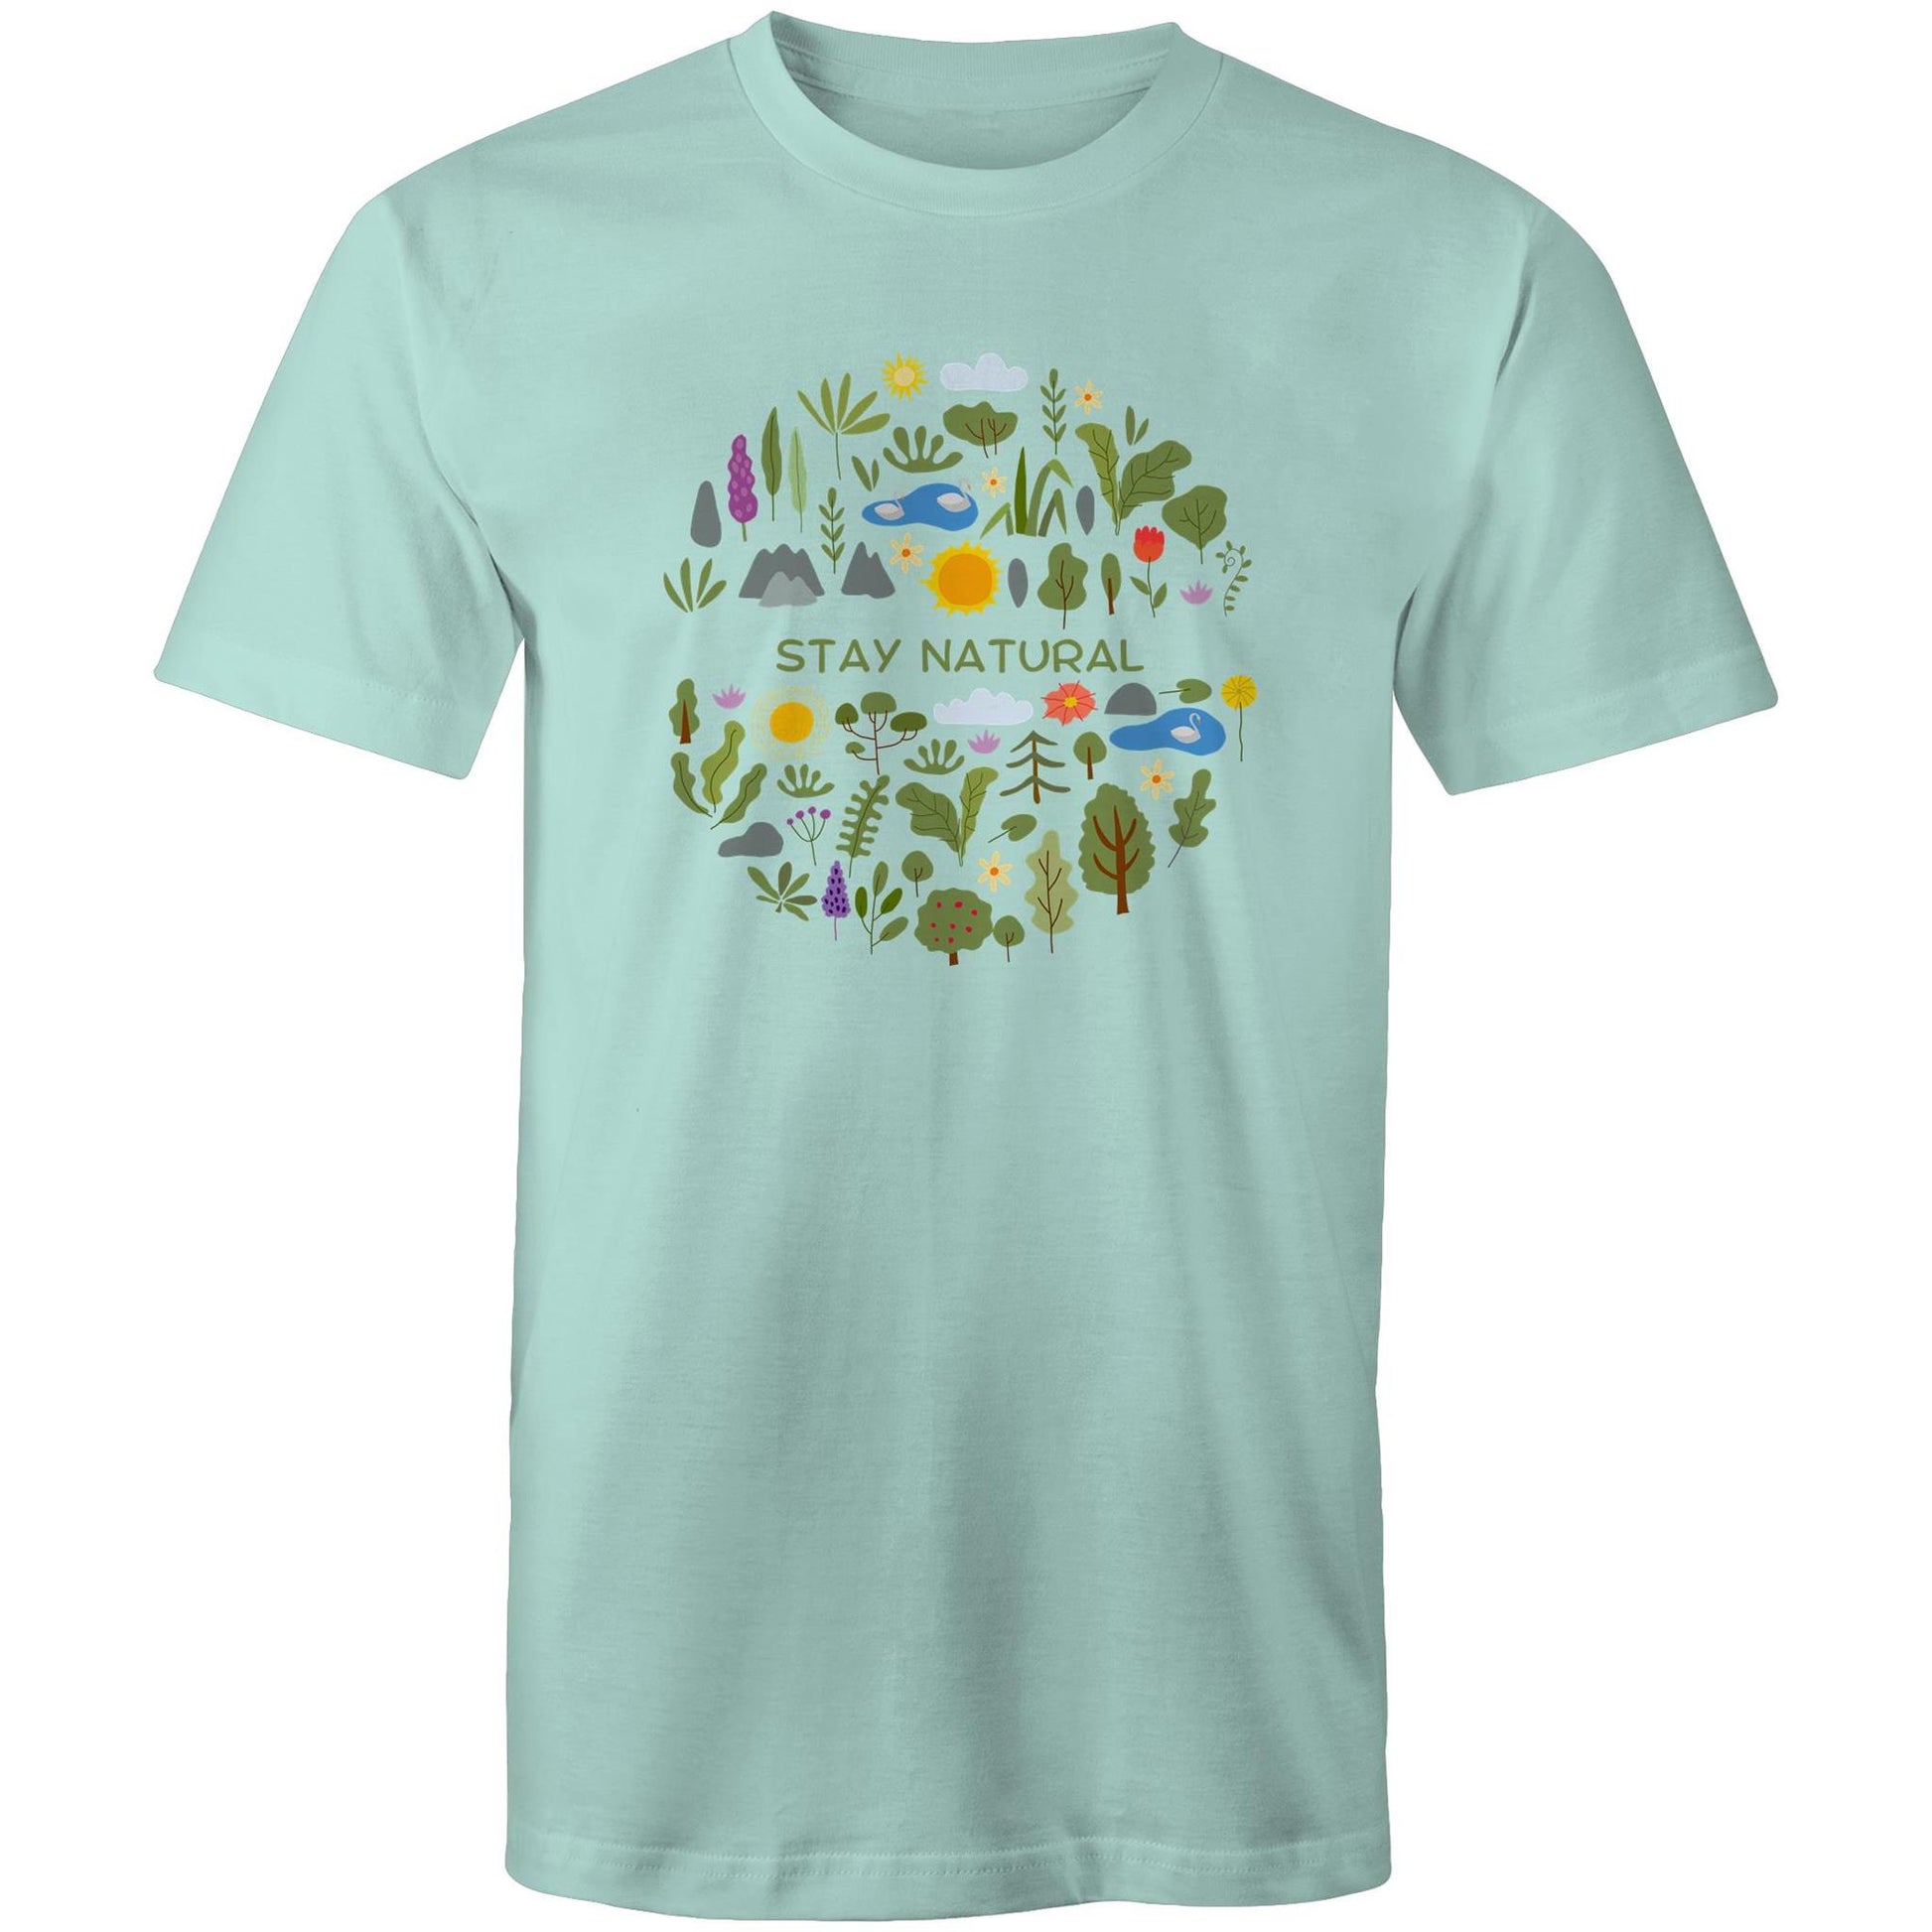 Stay Natural - Mens T-Shirt Aqua Mens T-shirt Environment Plants